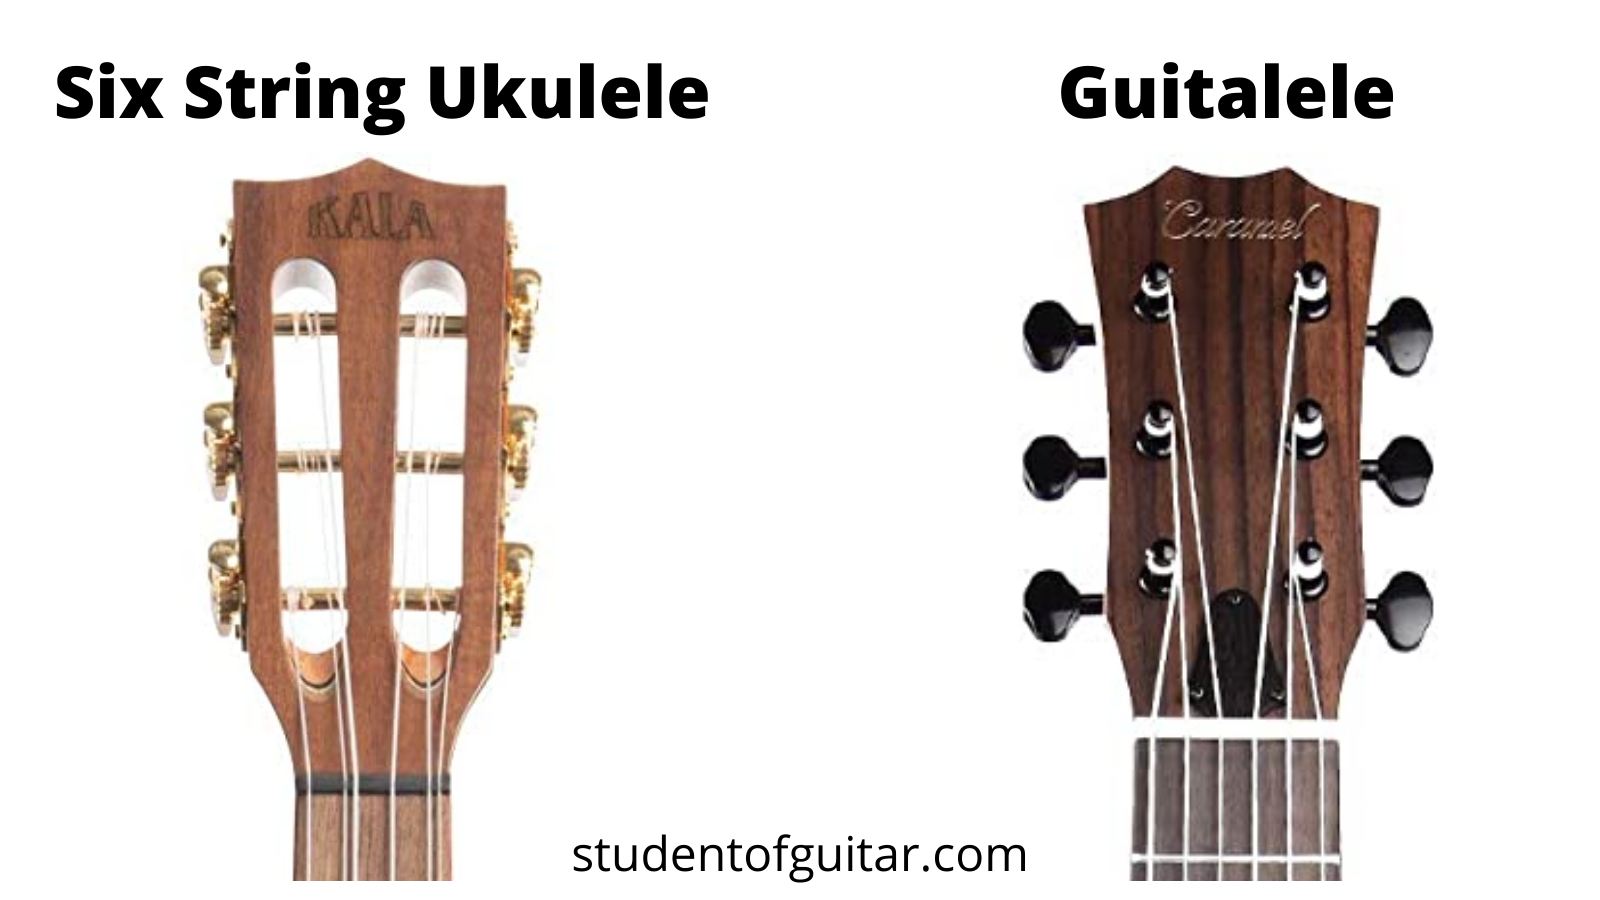 Være pad lærebog Guitalele Vs 6 String Ukulele: What's the Difference? [2022 Guide]